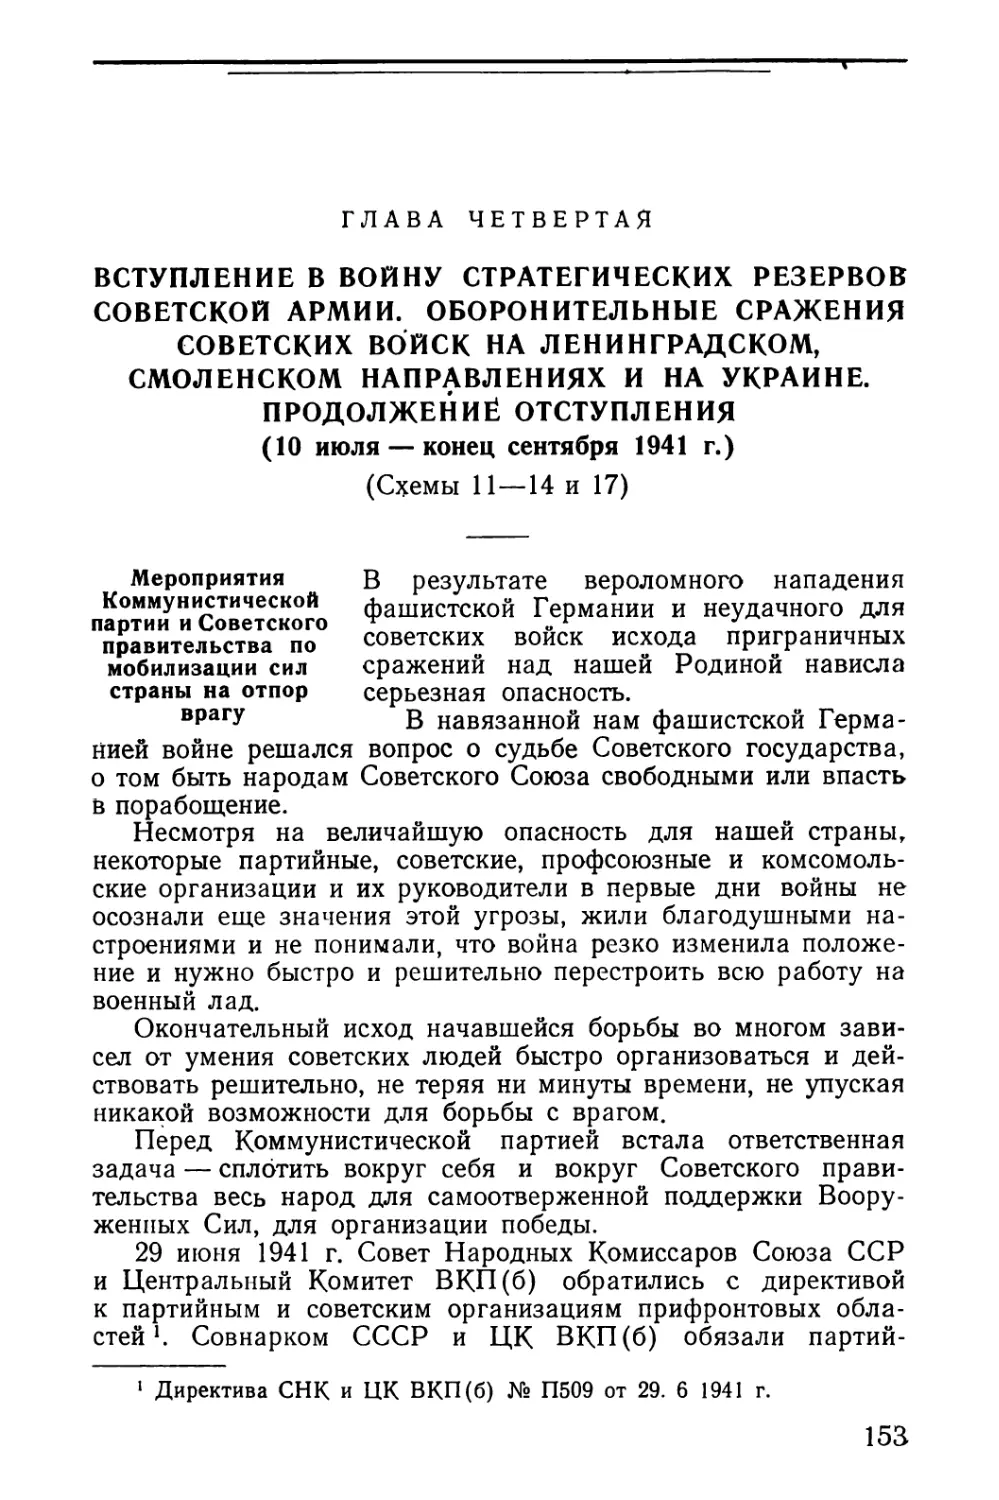 Мероприятия Коммунистической партии и Советского правительства по мобилизации сил страны на отпор врагу